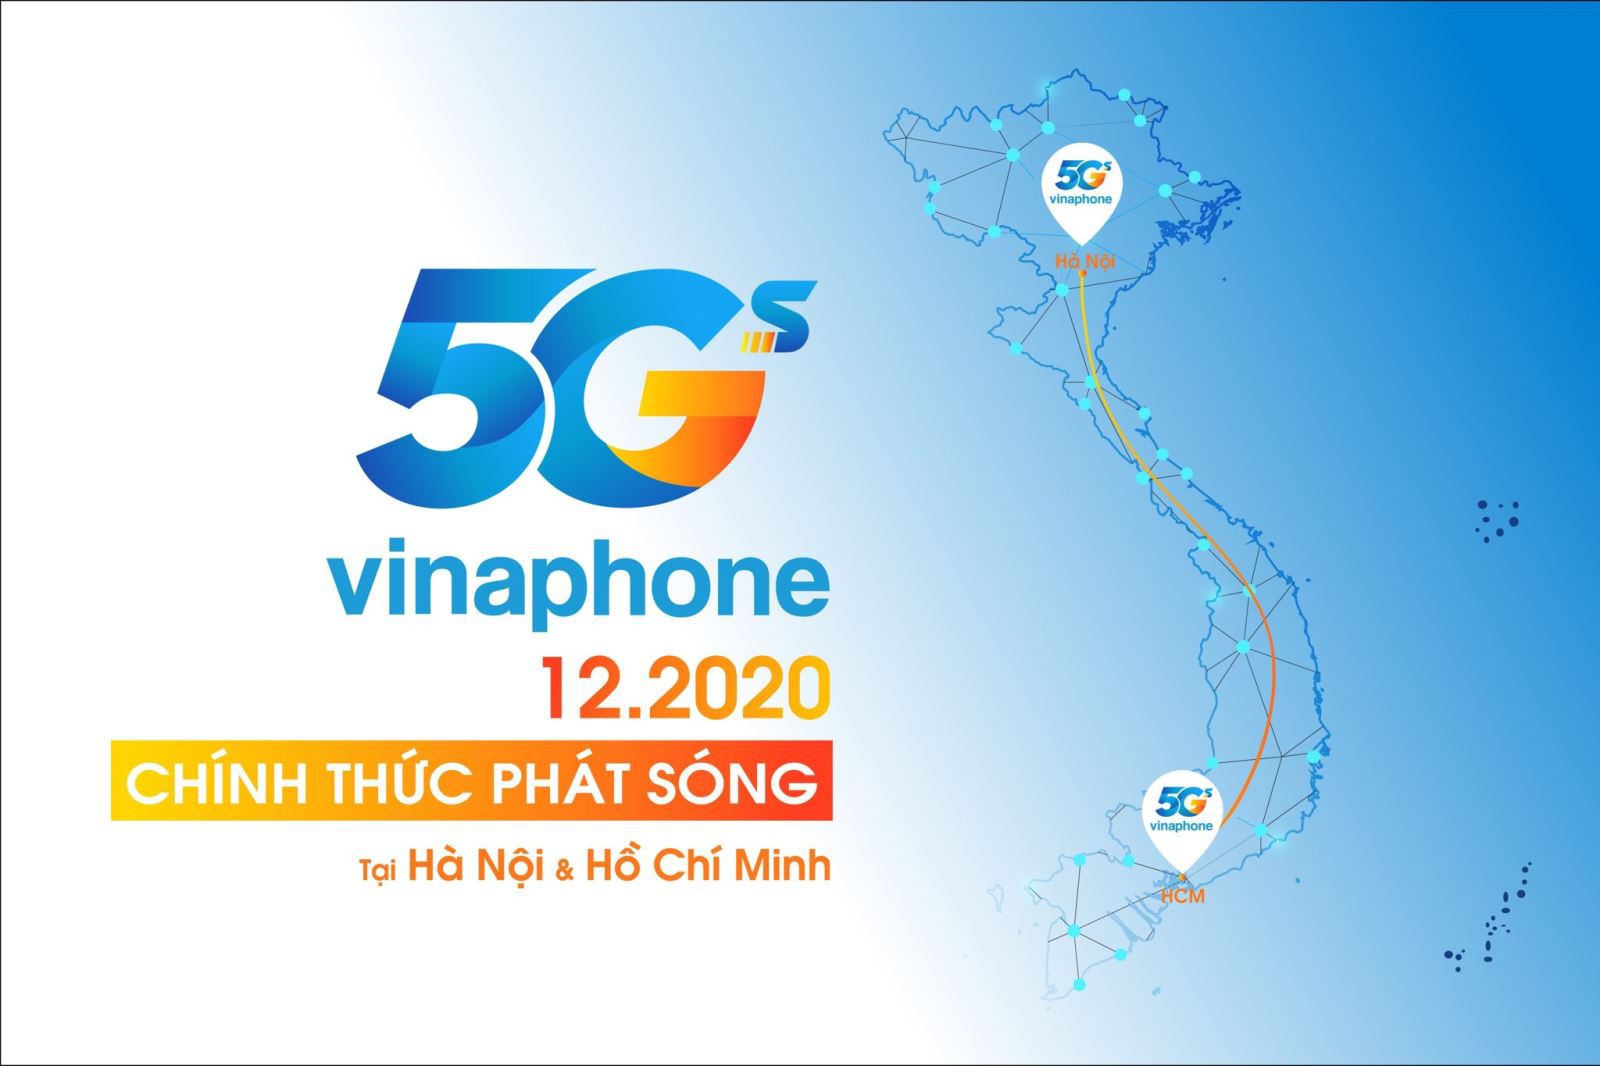 Bao giờ mạng 5G sẽ có mặt tại Việt Nam?  Làm cách nào để sử dụng 5G?  5